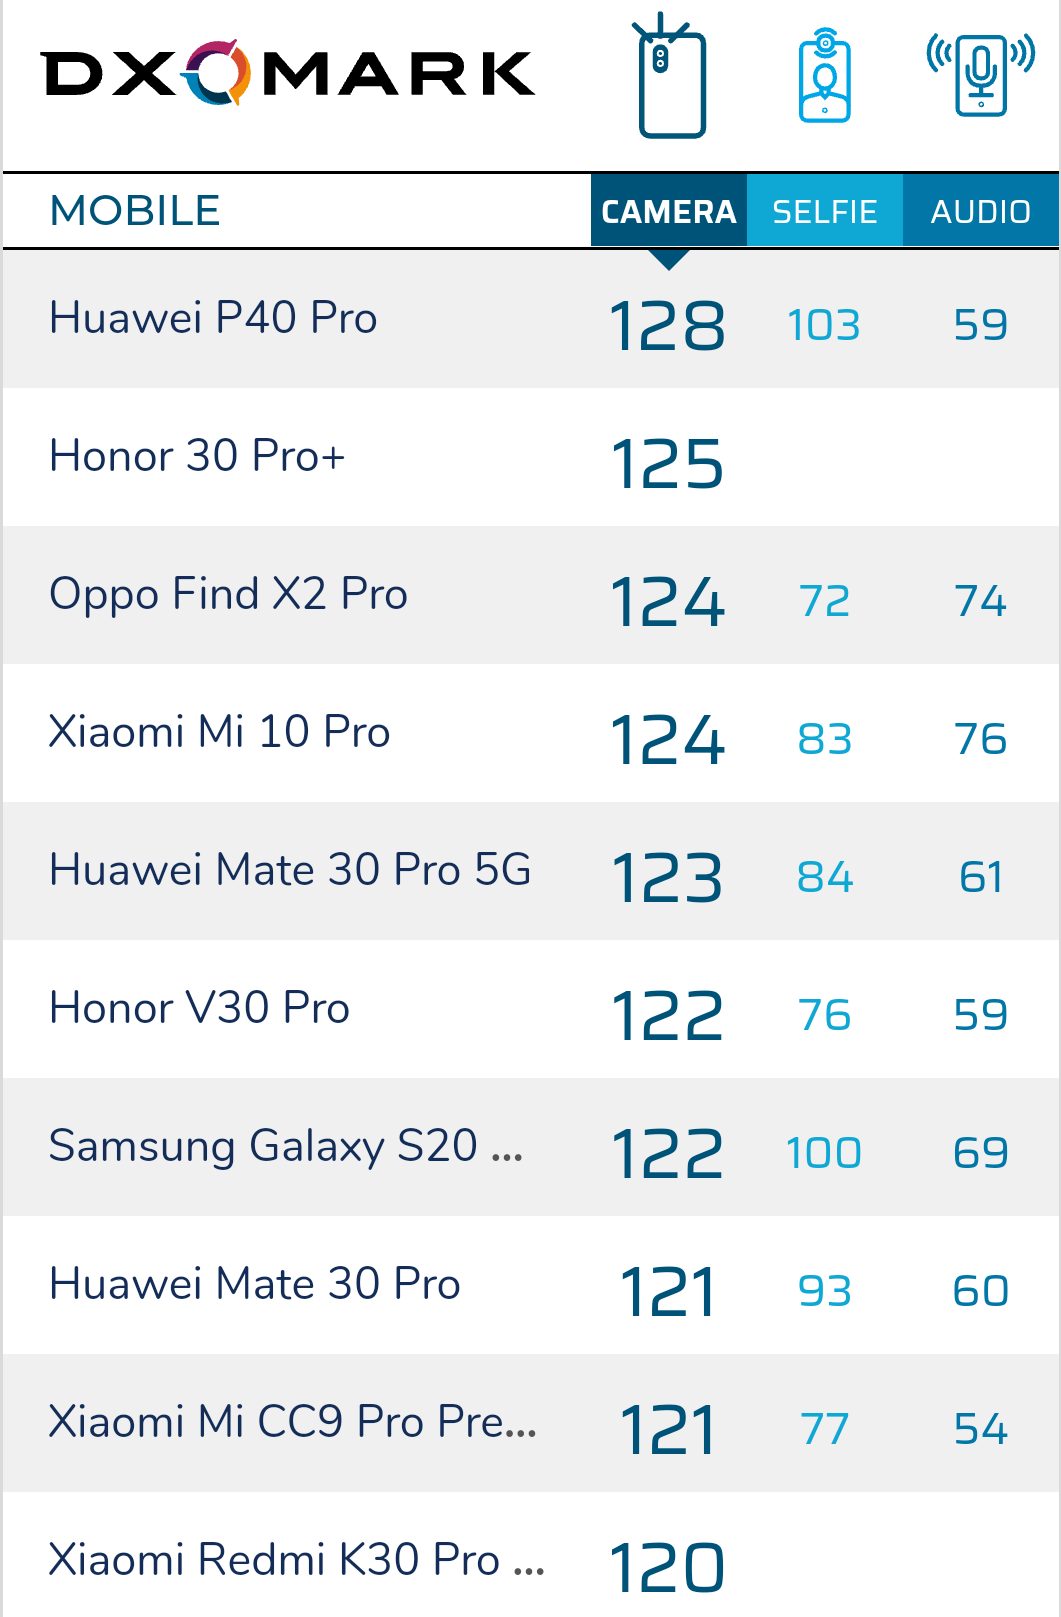 再抽脸？红米noteK30 Pro照相DXO成绩仅120，未超荣誉V30 Pro！